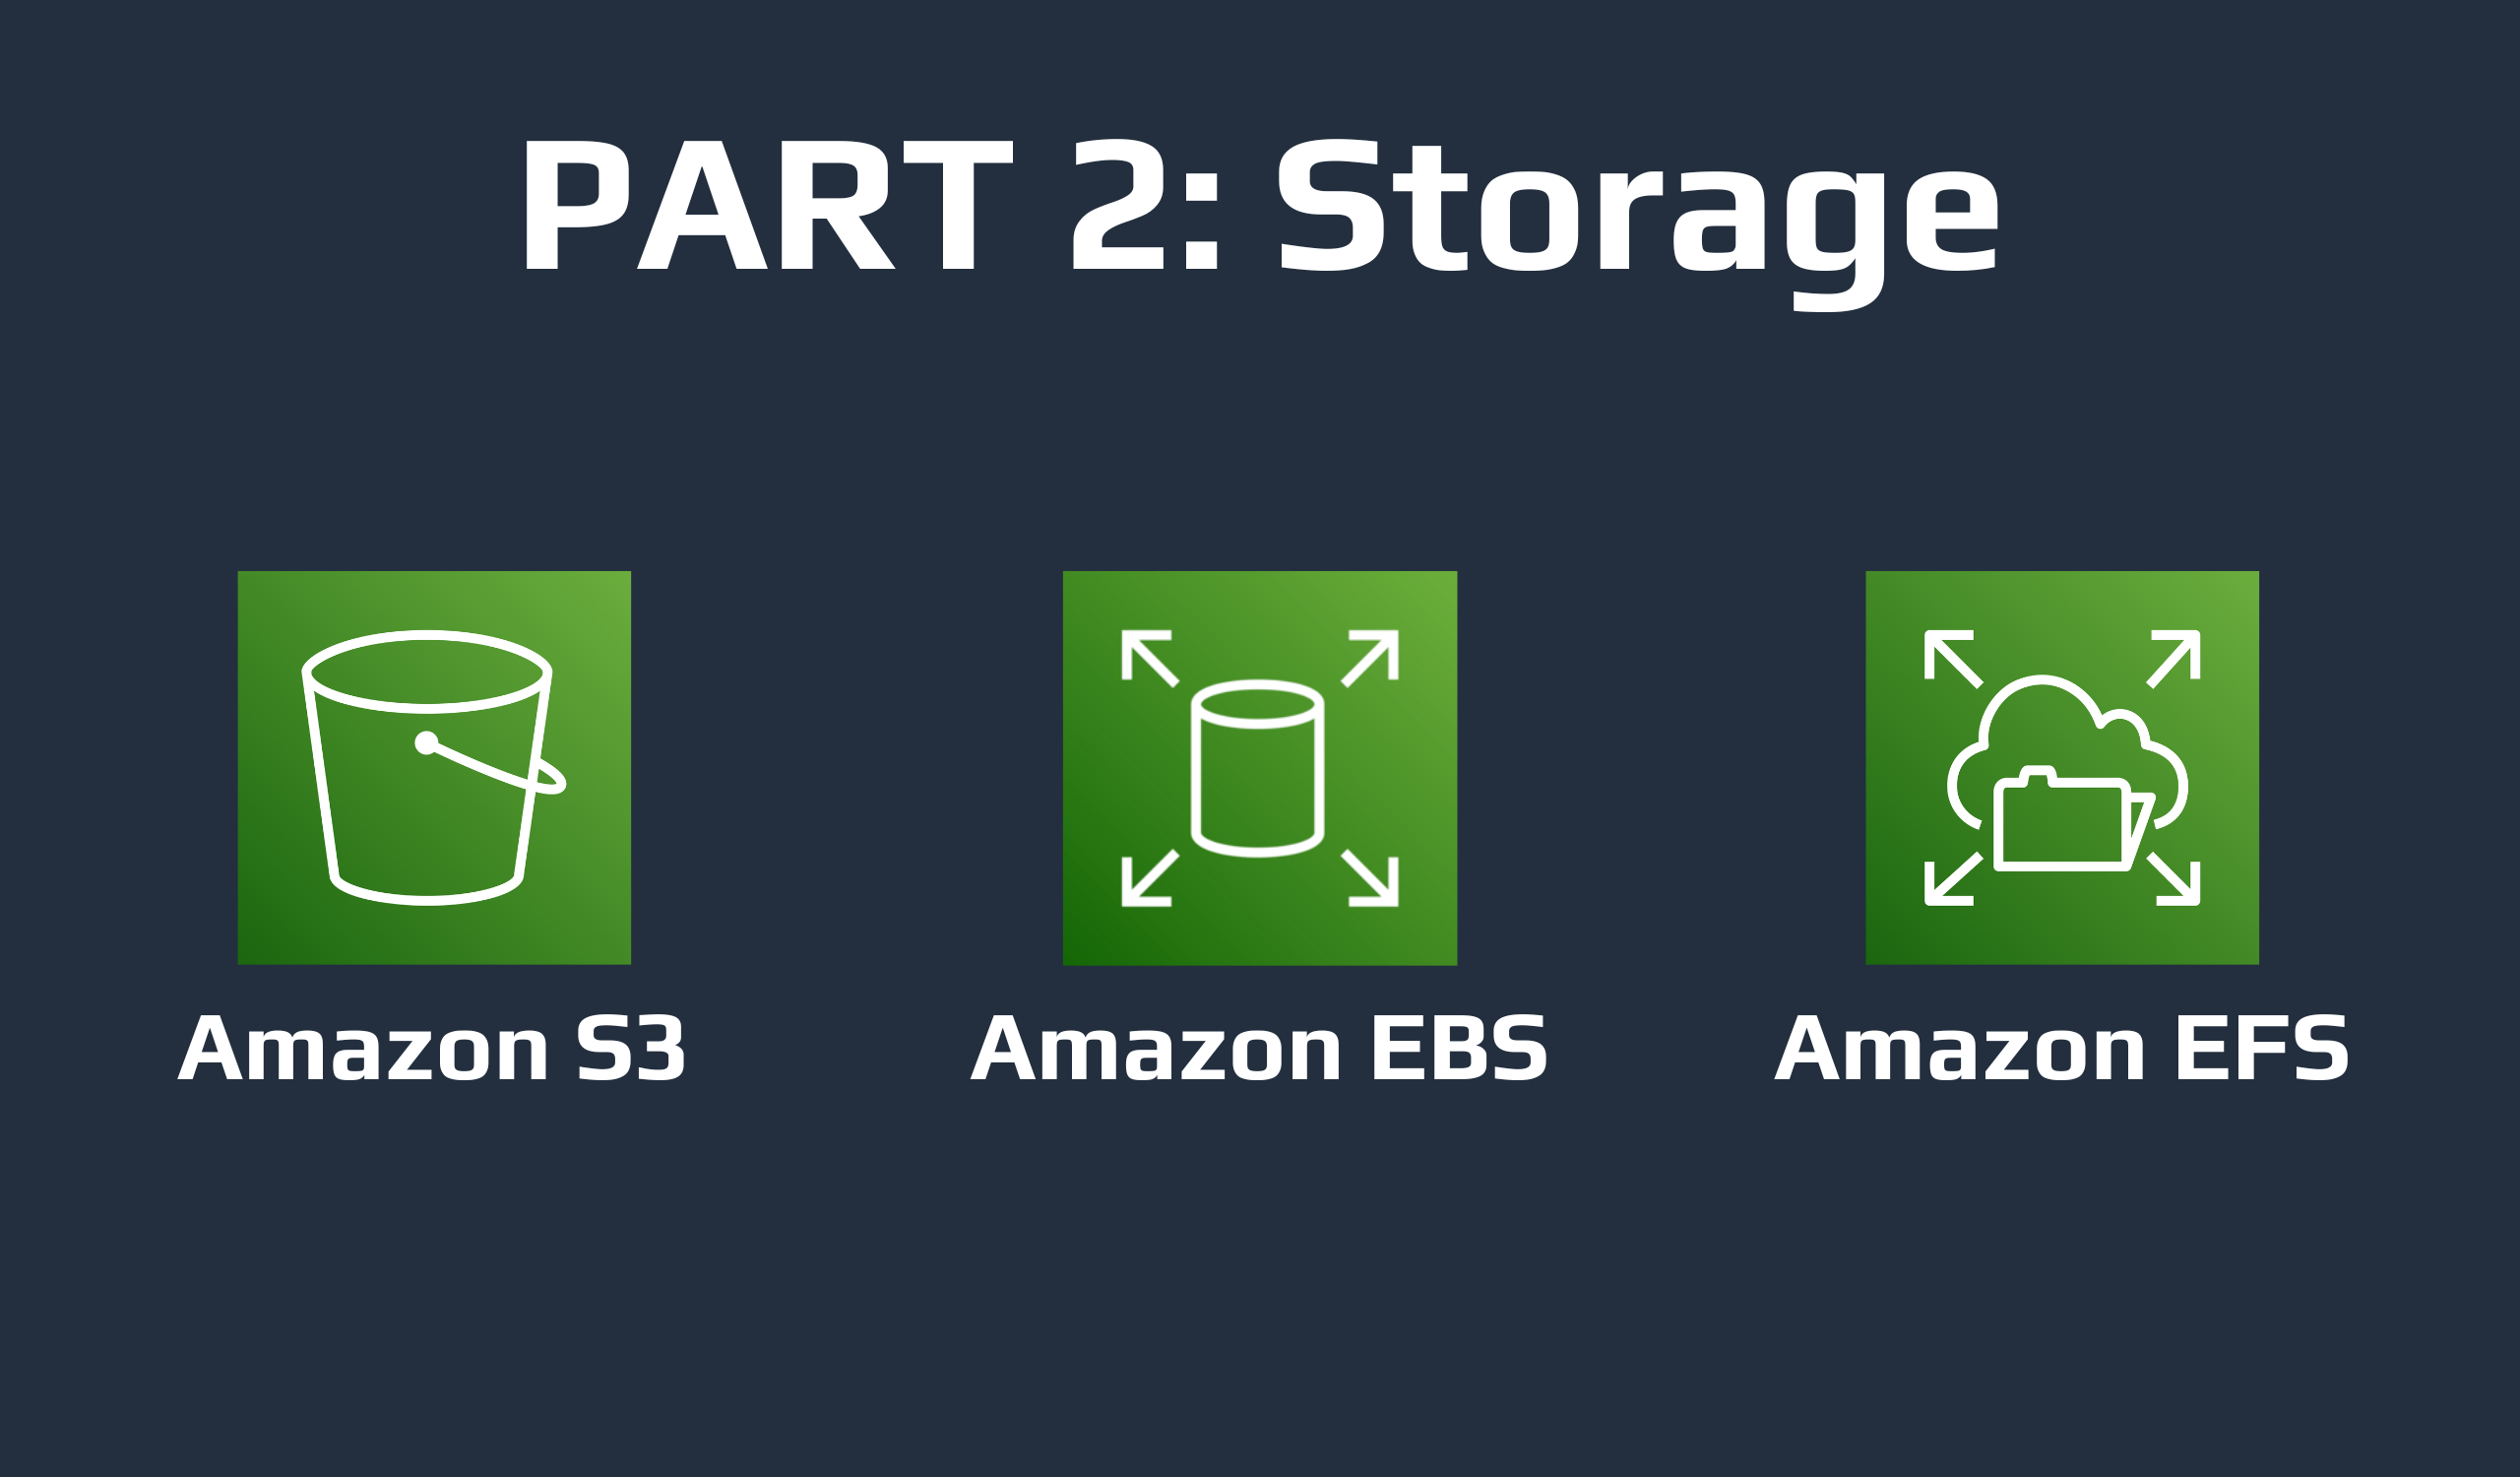 Amazon S3, Amazon EBS, and Amazon EFS